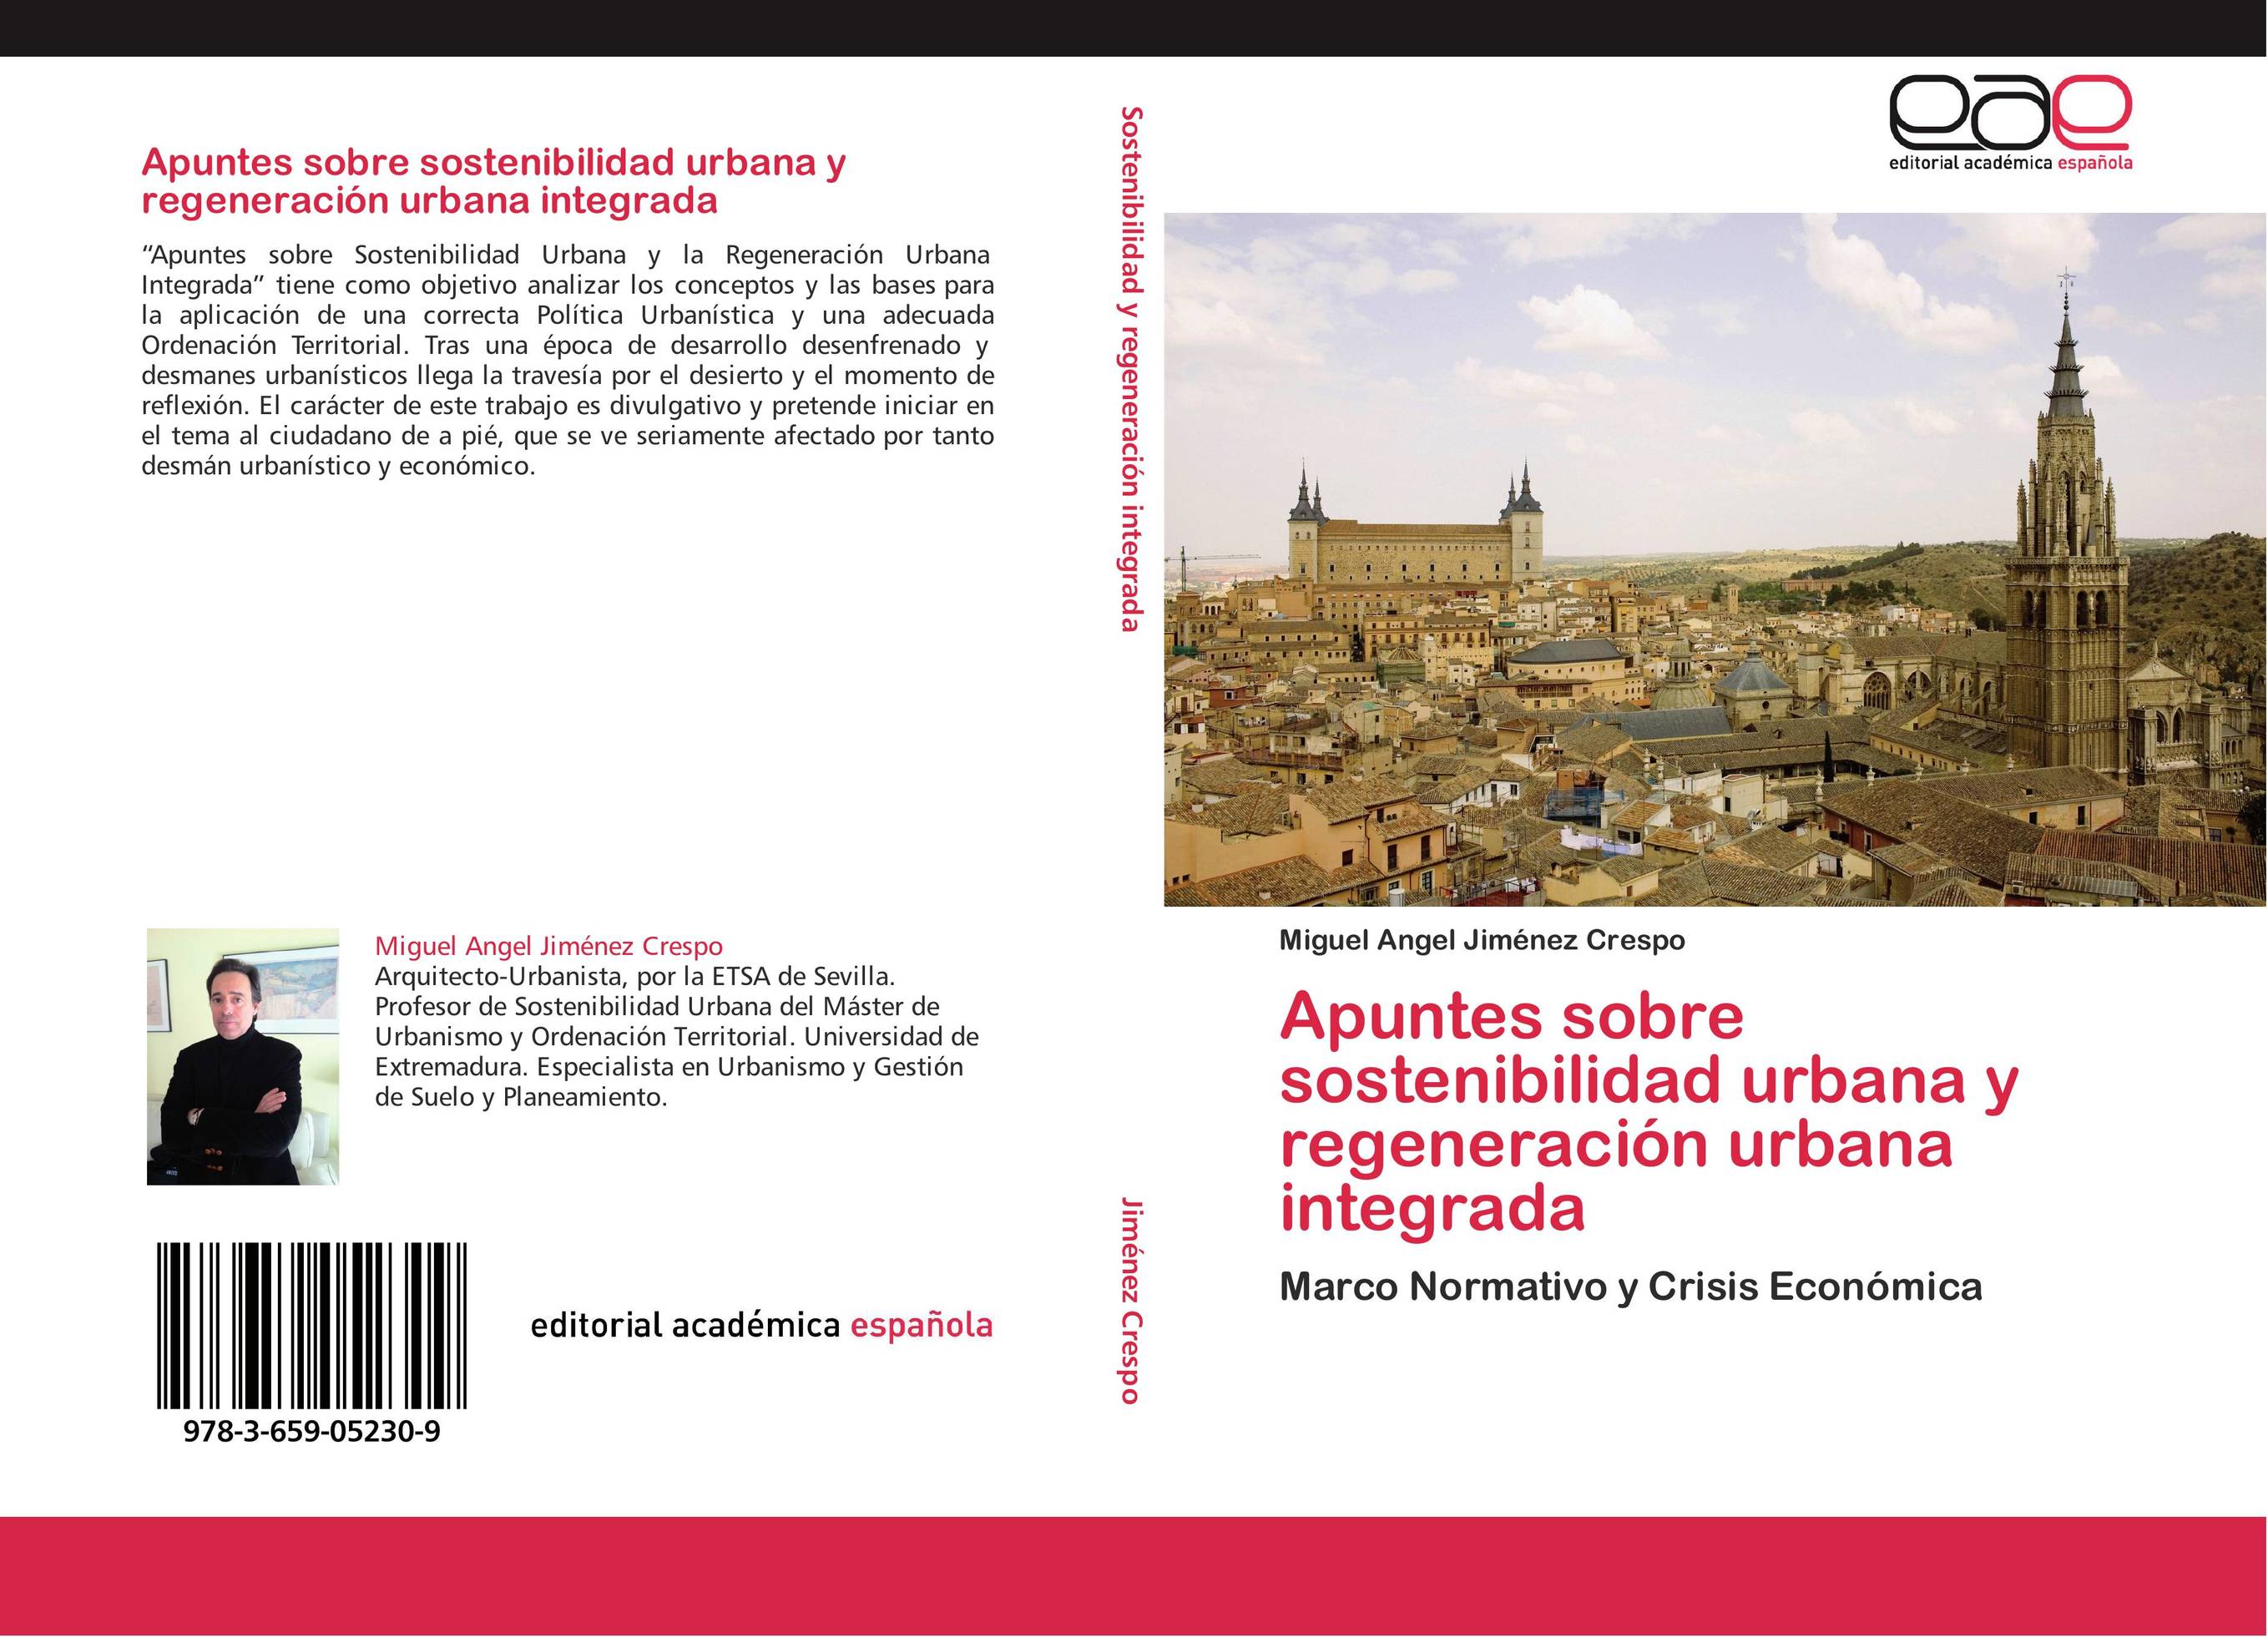 Apuntes sobre sostenibilidad urbana y regeneración urbana integrada